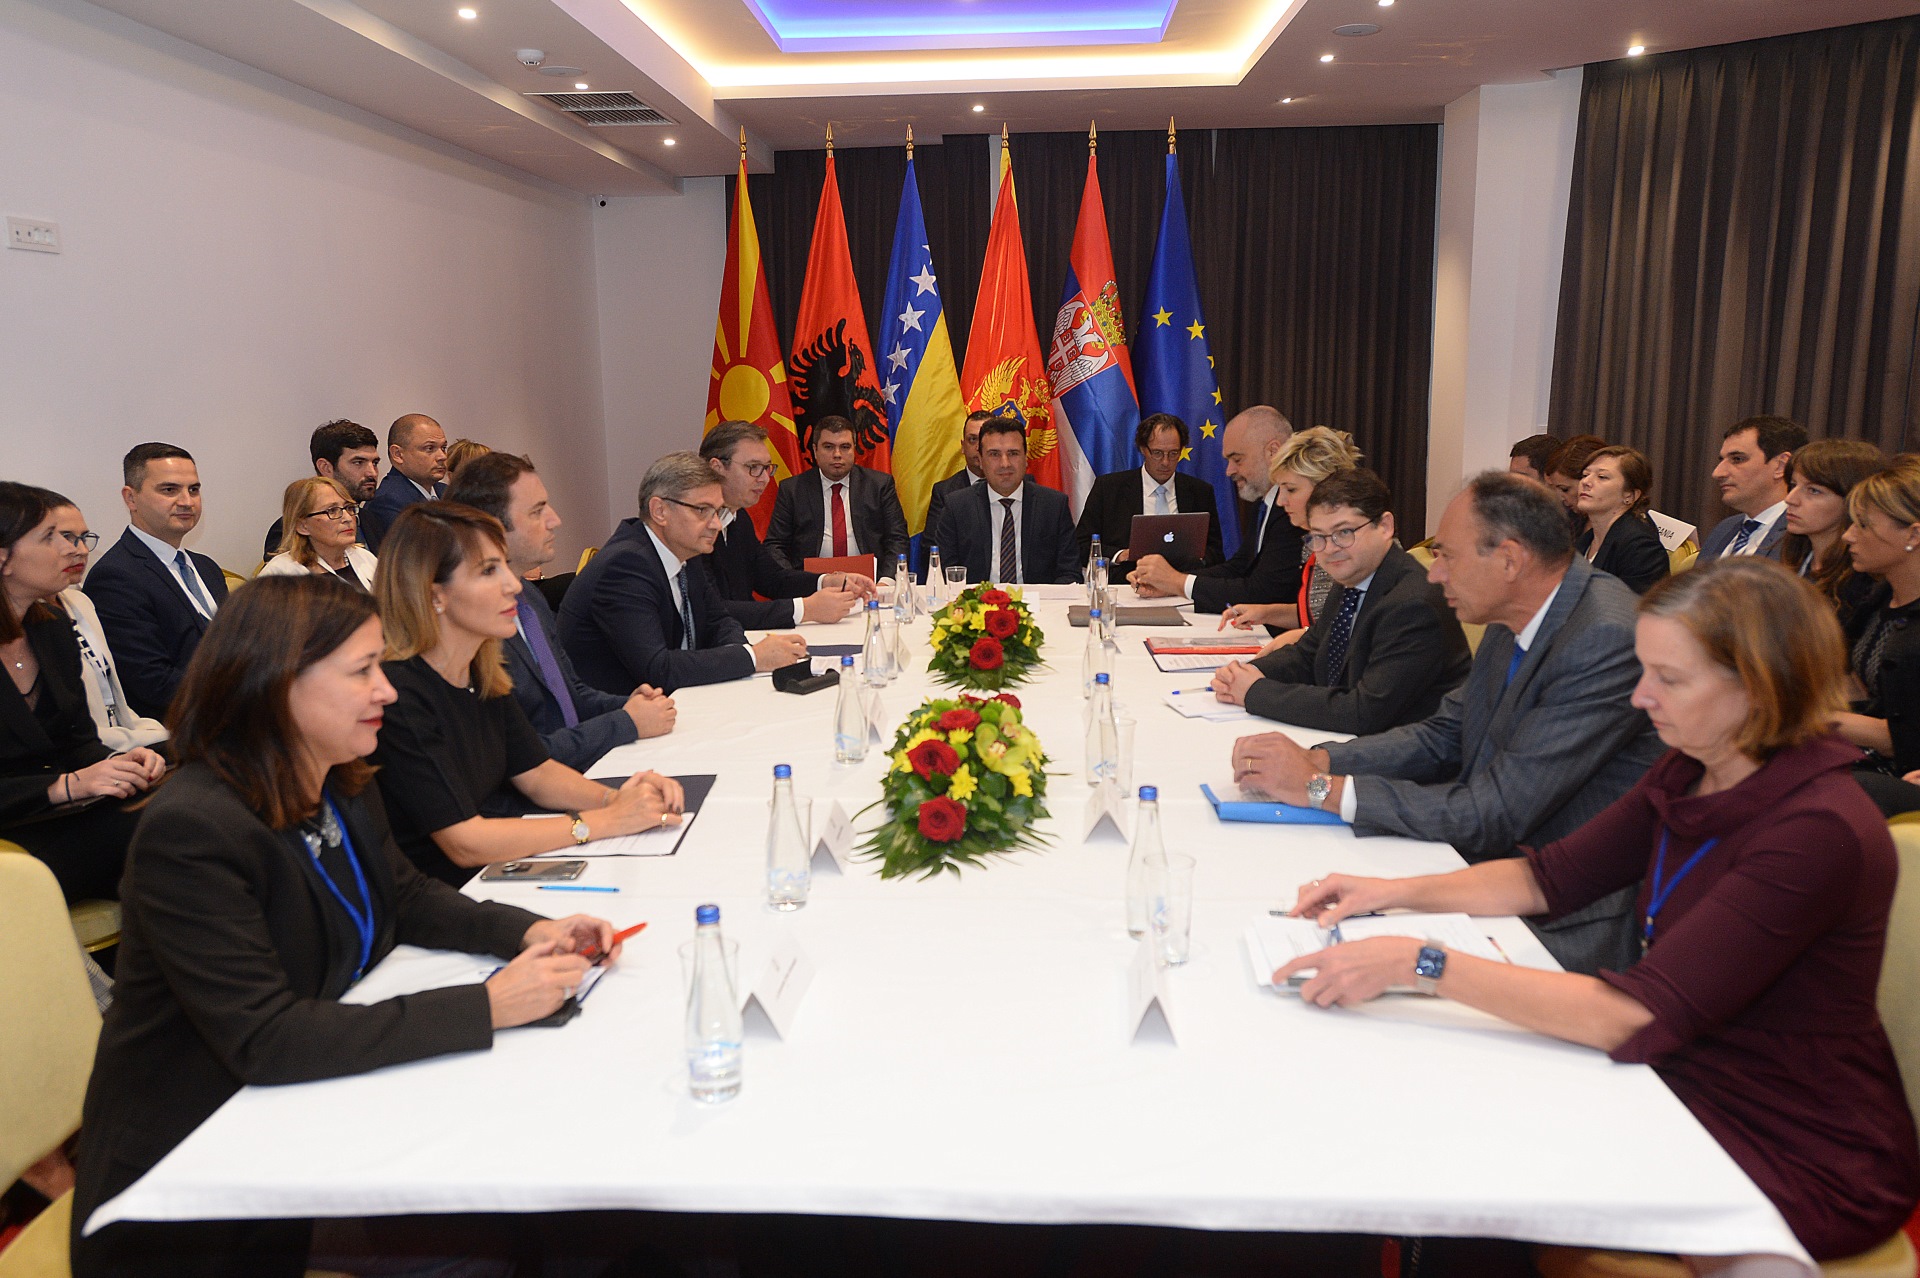 Predsednik Srbije Aleksandar Vucic dobri sastanci i odluke u Ohridu, ocekujem napade